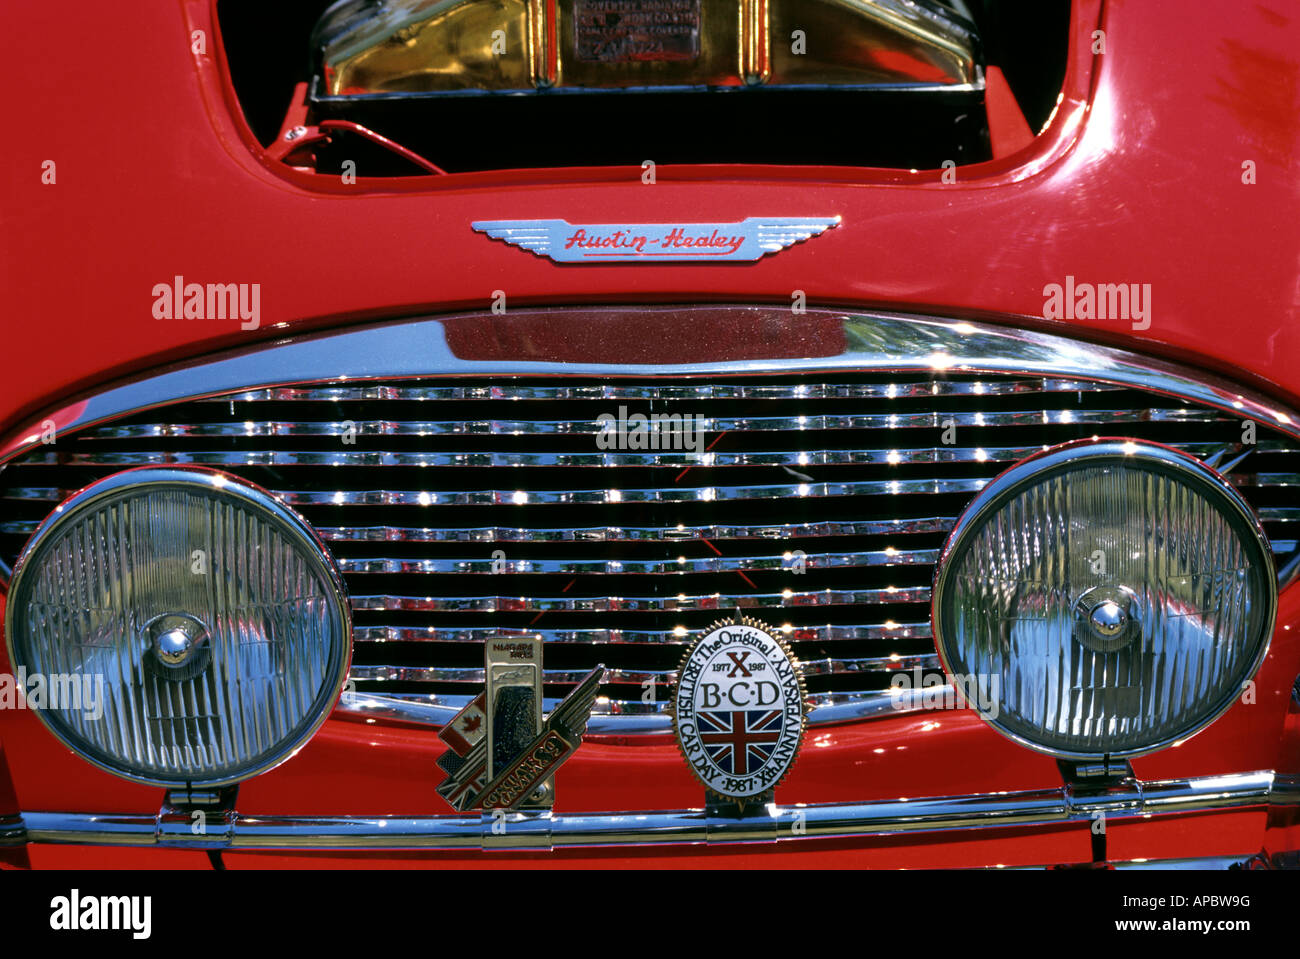 Austin Healey Antique classique voiture britannique Banque D'Images